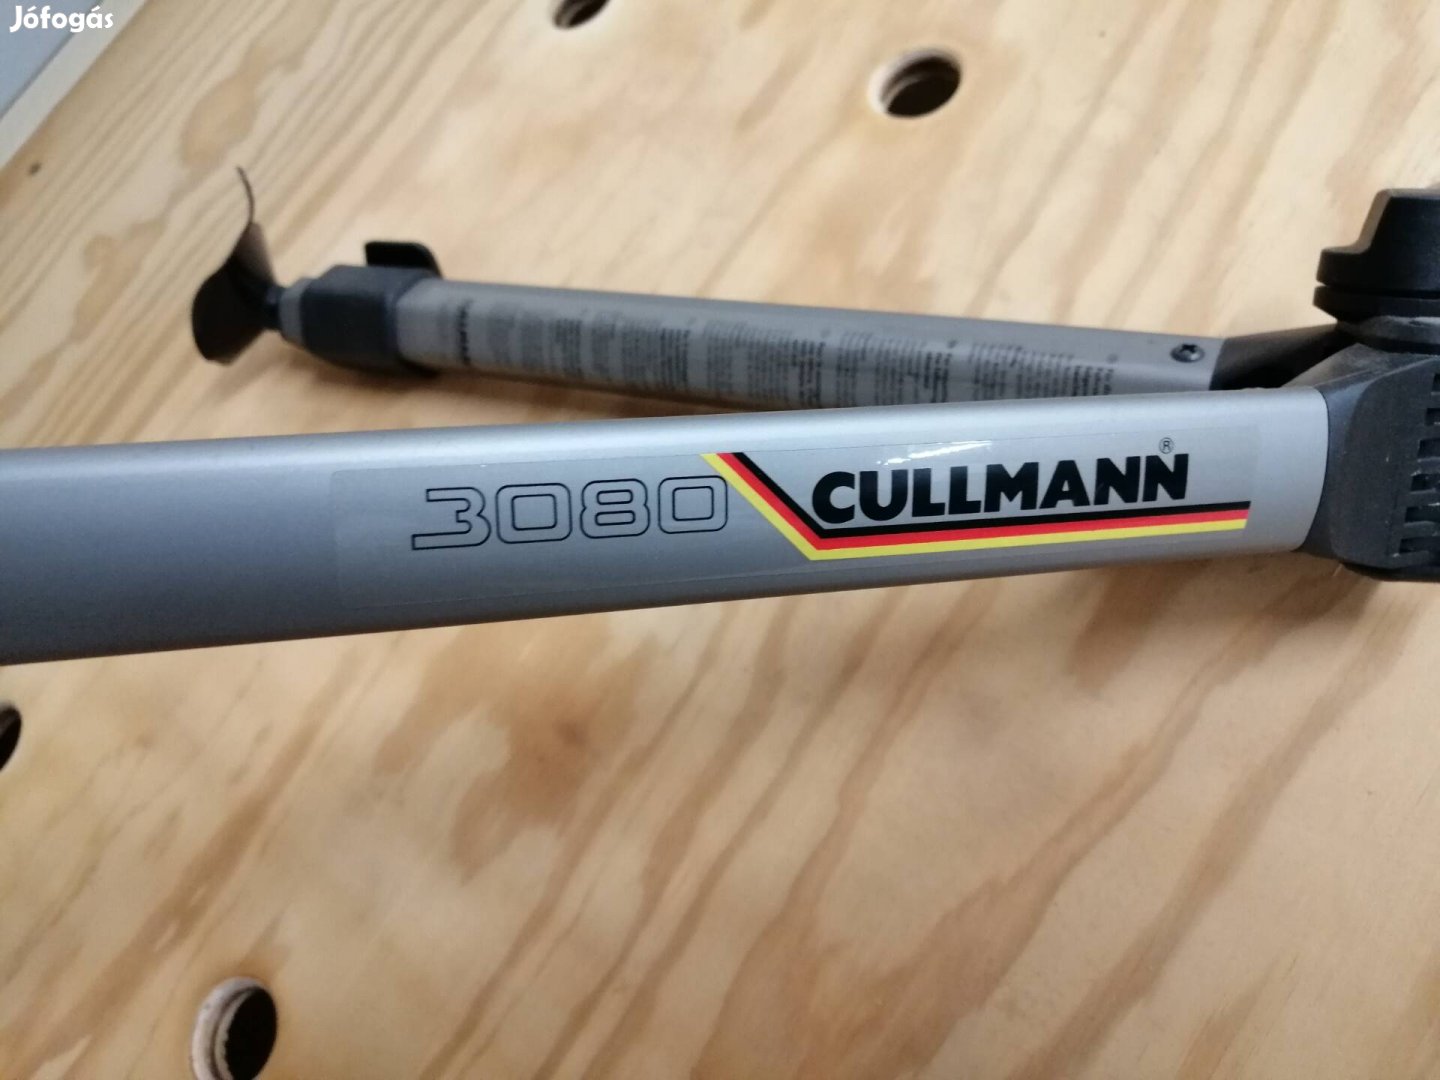 Cullmann 3080 alkatrész fotó állvány